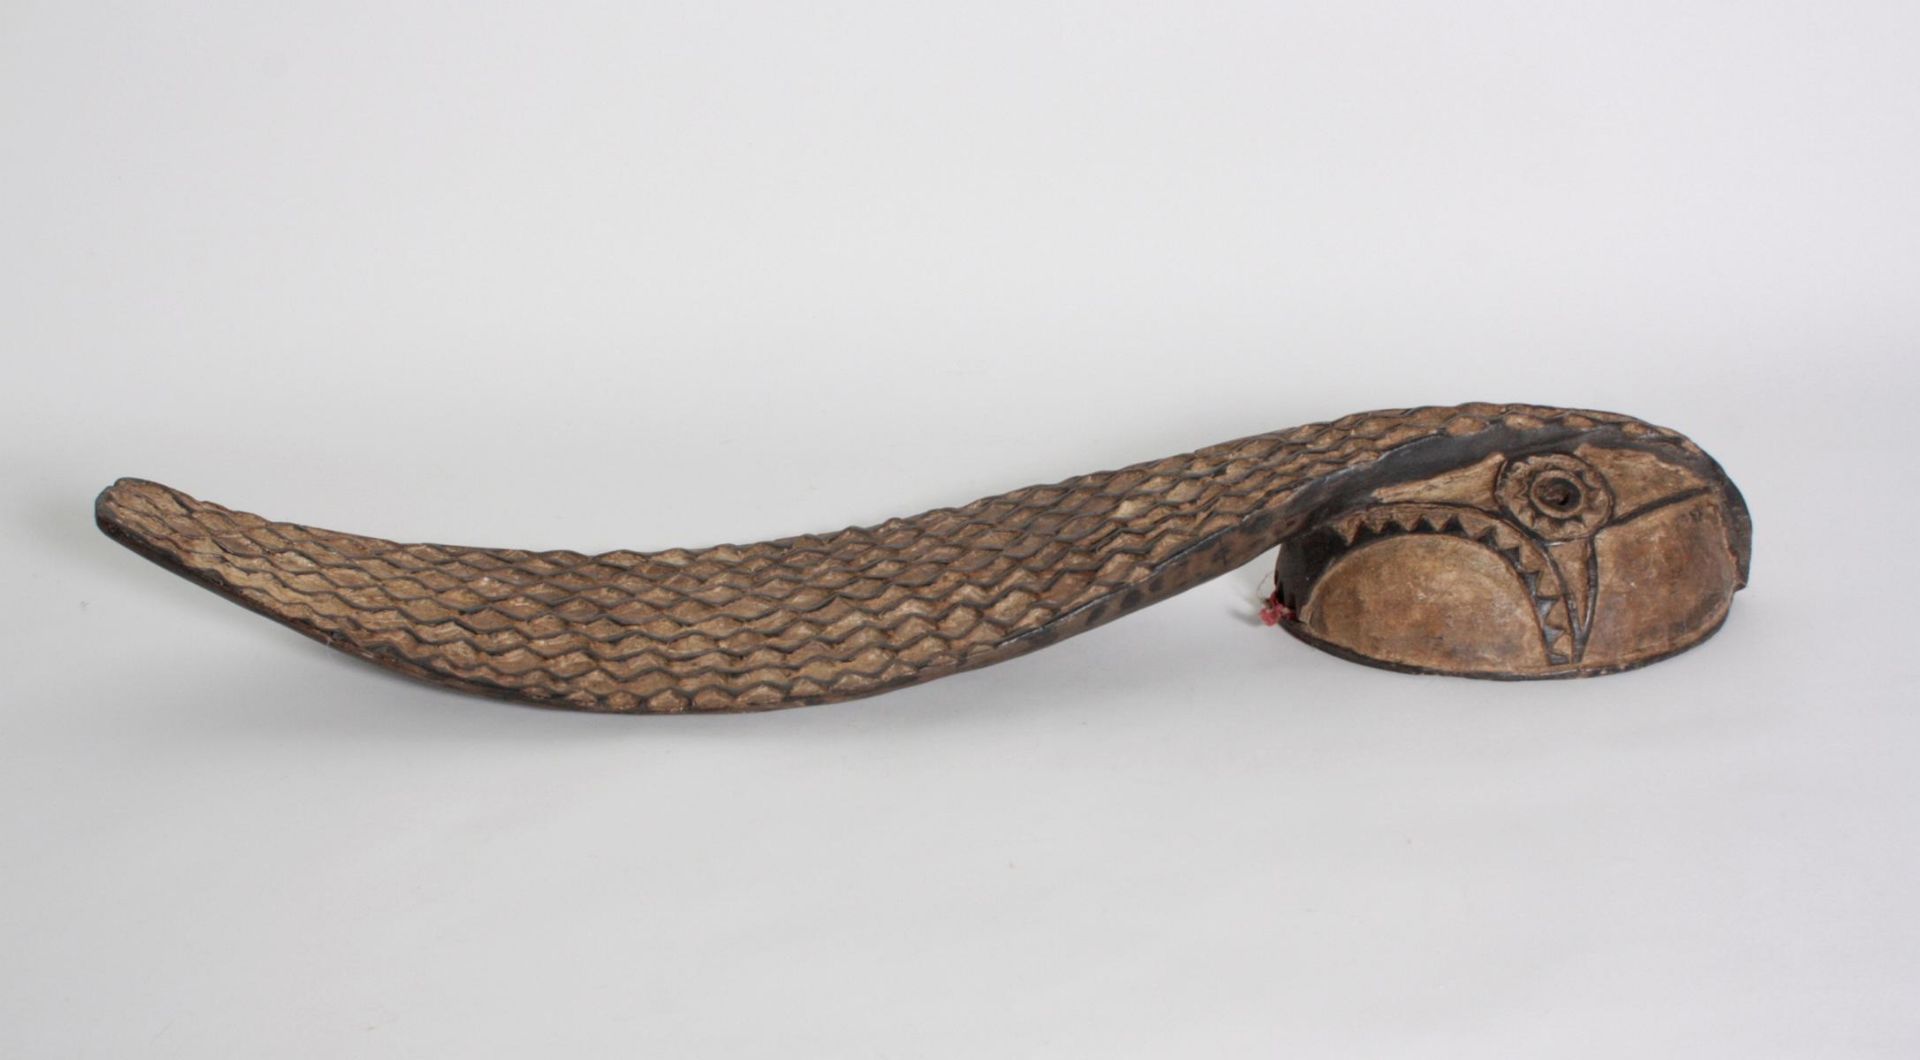 Schlangenmaske, Mossi, Burkina Faso, 1. Hälfte 20. Jh.Holz geschnitzt, schwarz-weiß eingefärbt mit - Bild 2 aus 4